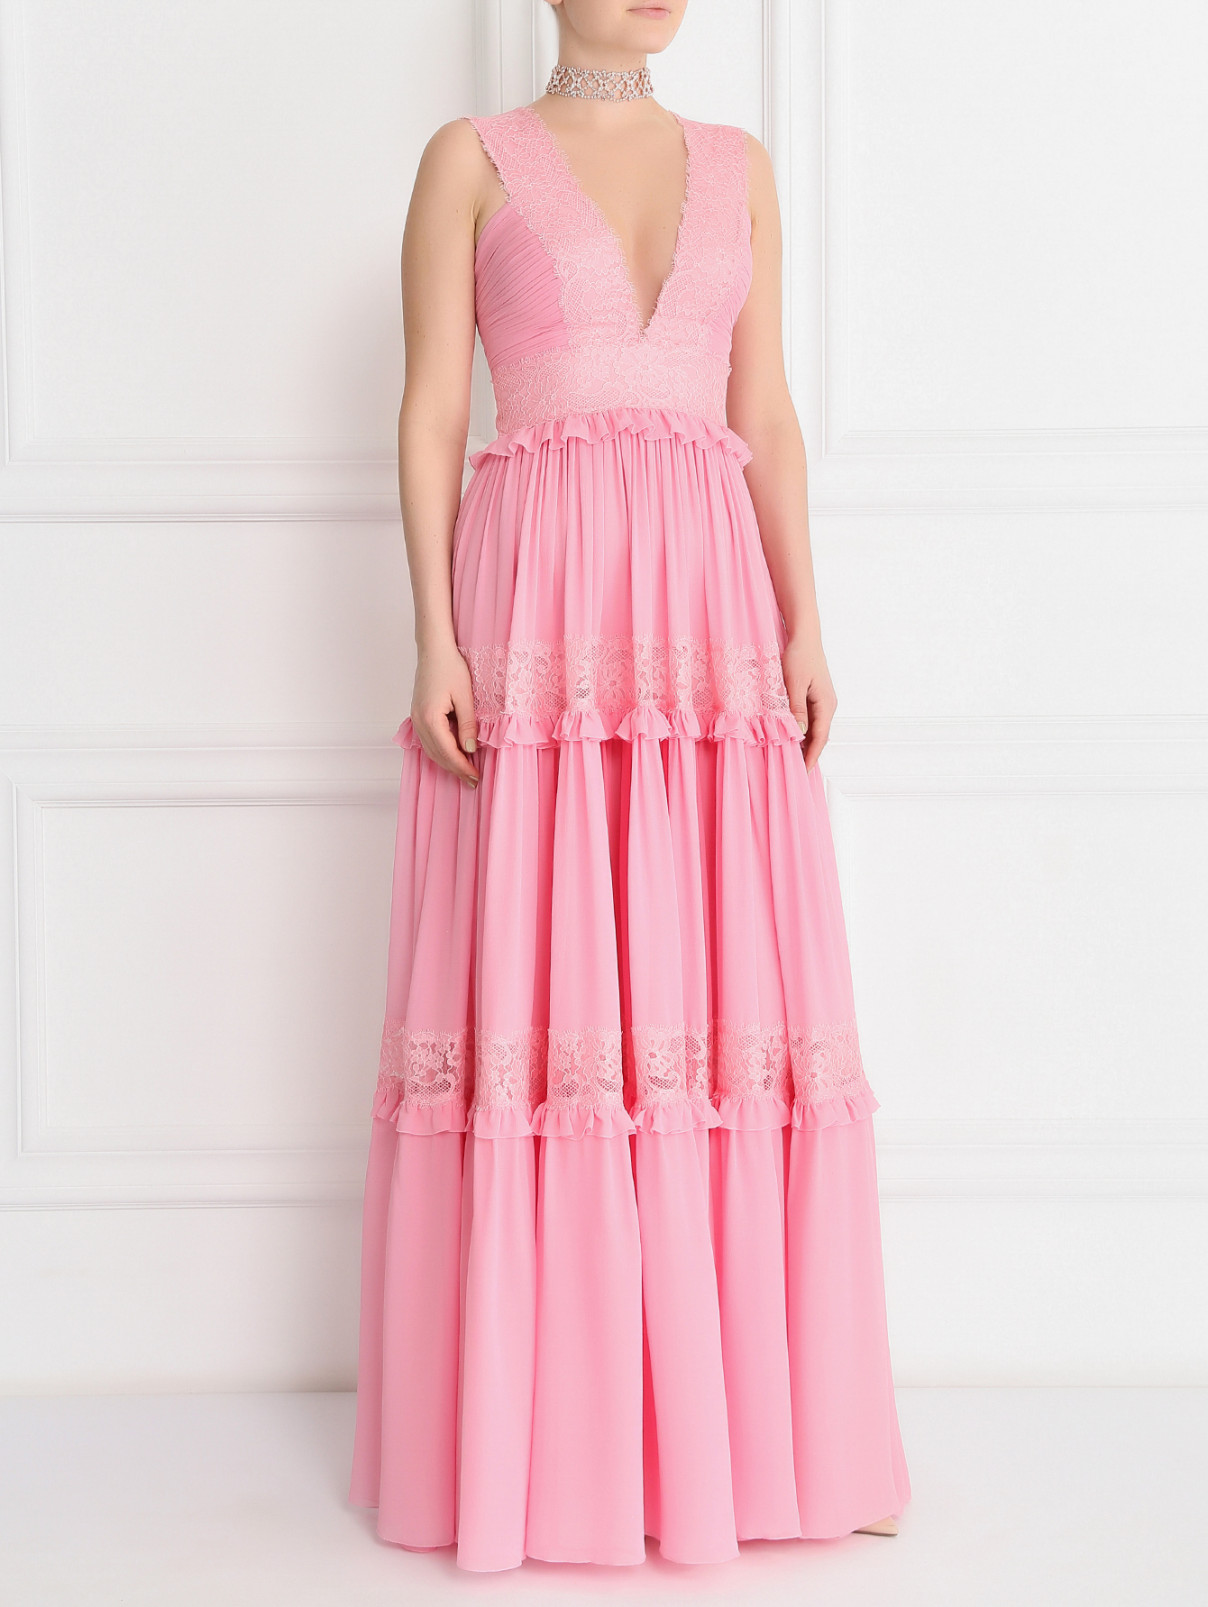 Платье-макси с кружевной отделкой Zuhair Murad  –  Модель Общий вид  – Цвет:  Розовый